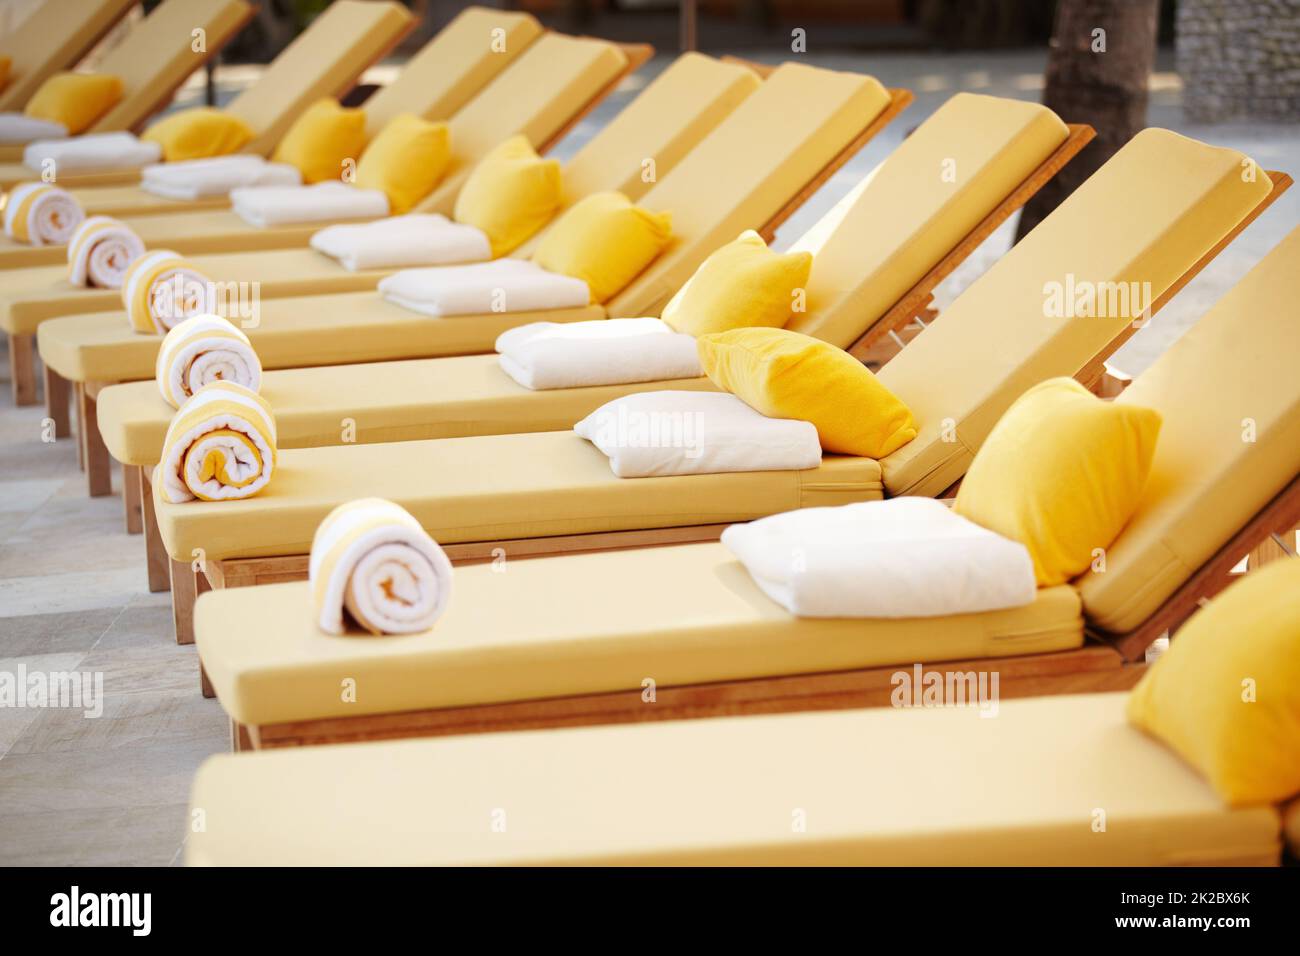 Liegestühle in einer Reihe. Blick auf eine Reihe von gelben Liegestühlen des Resorts. Stockfoto